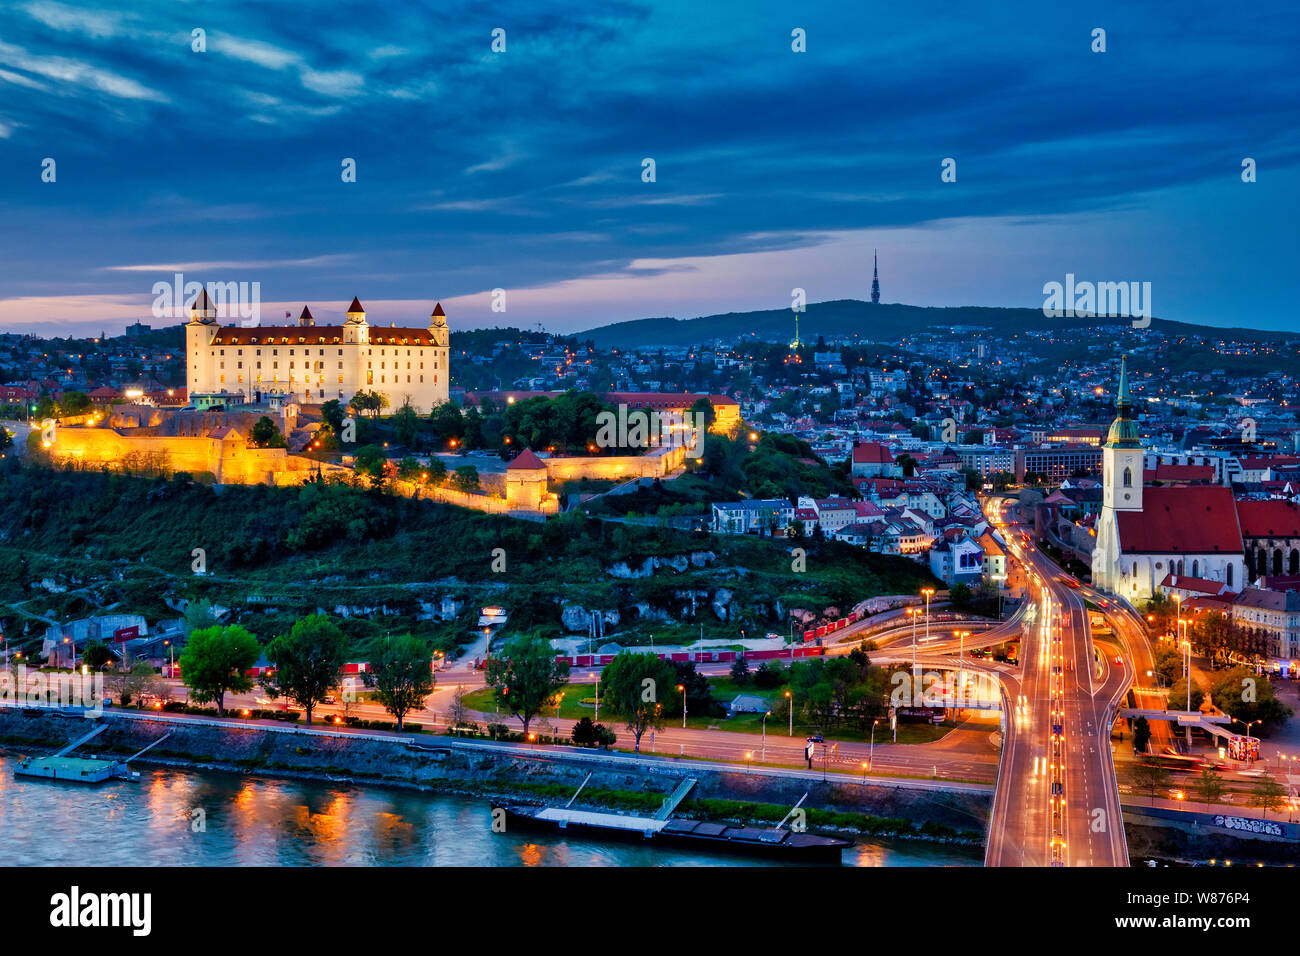 Le château de Bratislava et les toits de la vieille ville, à Bratislava, Slovaquie Banque D'Images